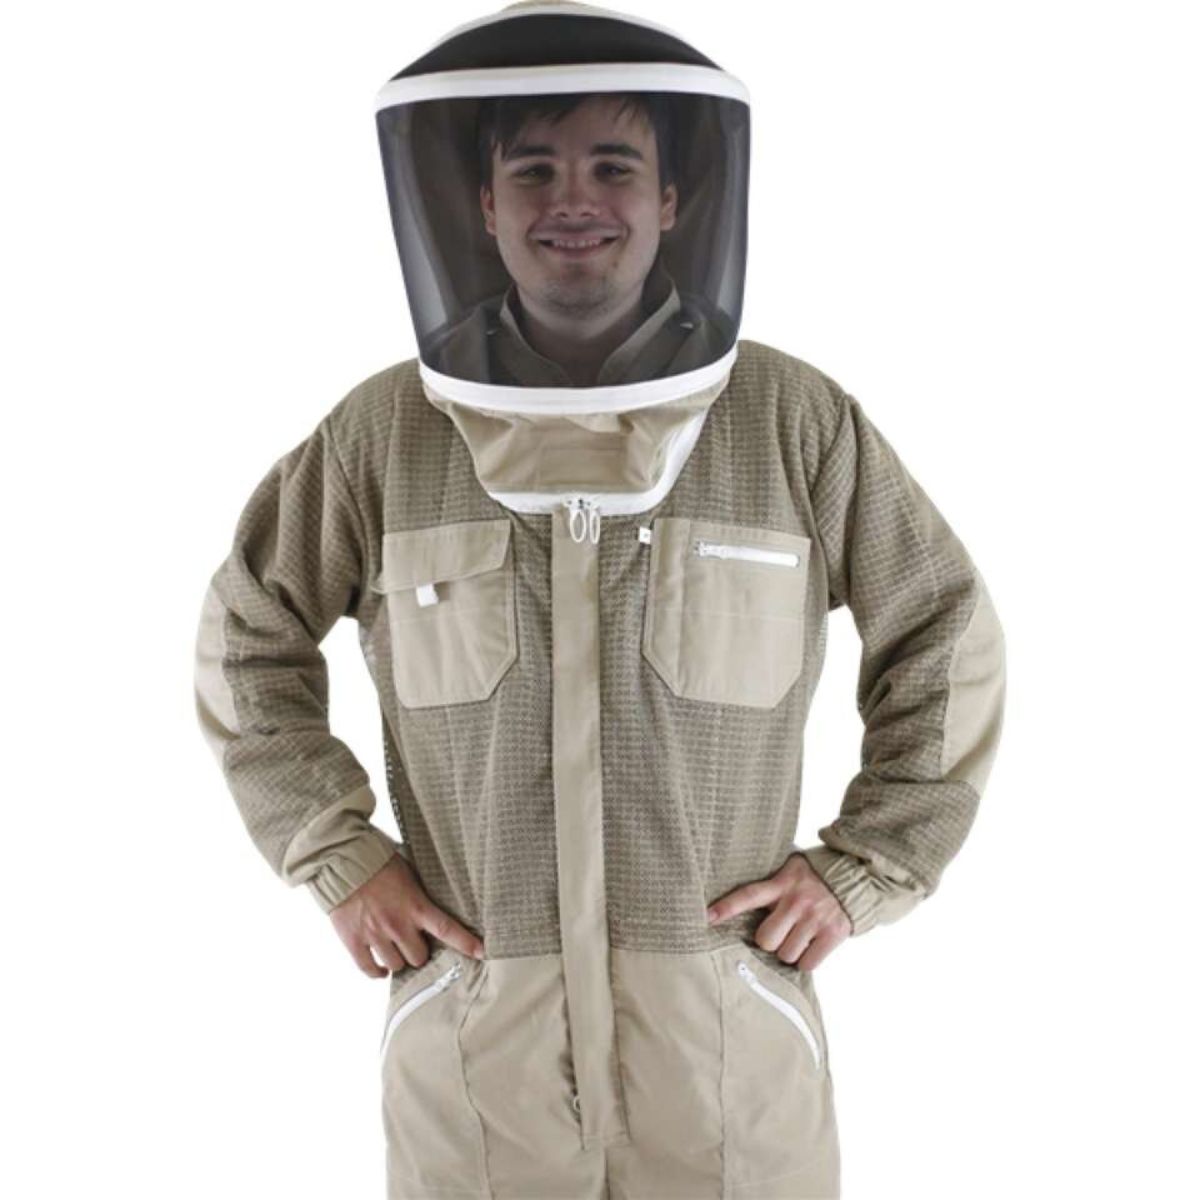 Swienty Breeze Protector Beekeeping Suit